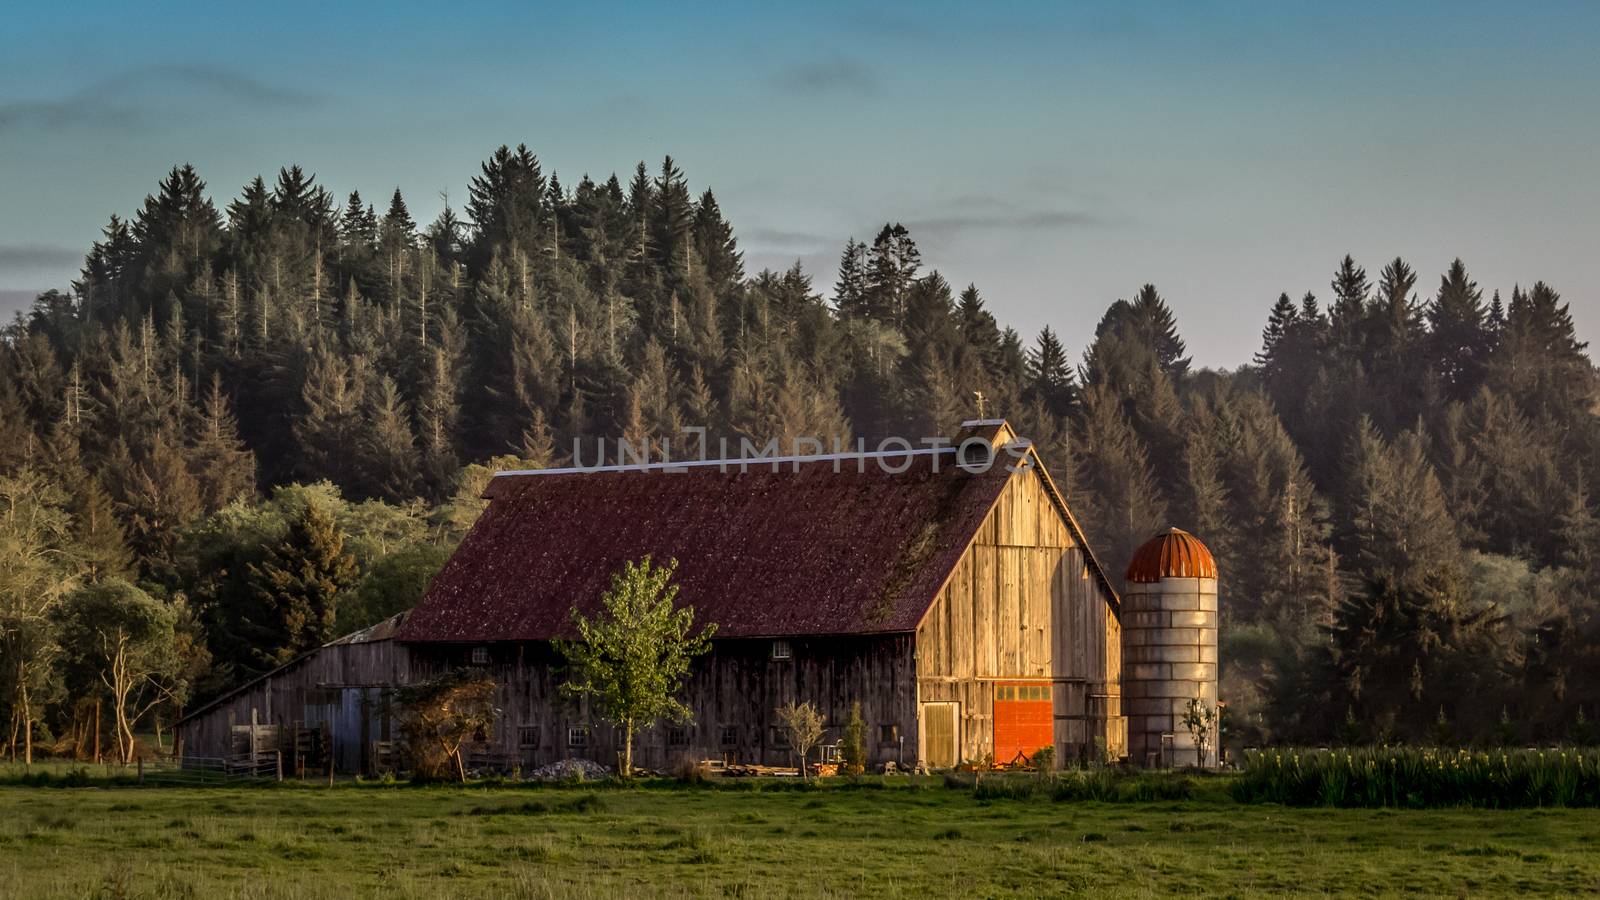 A quiet farm in N. California, USA.